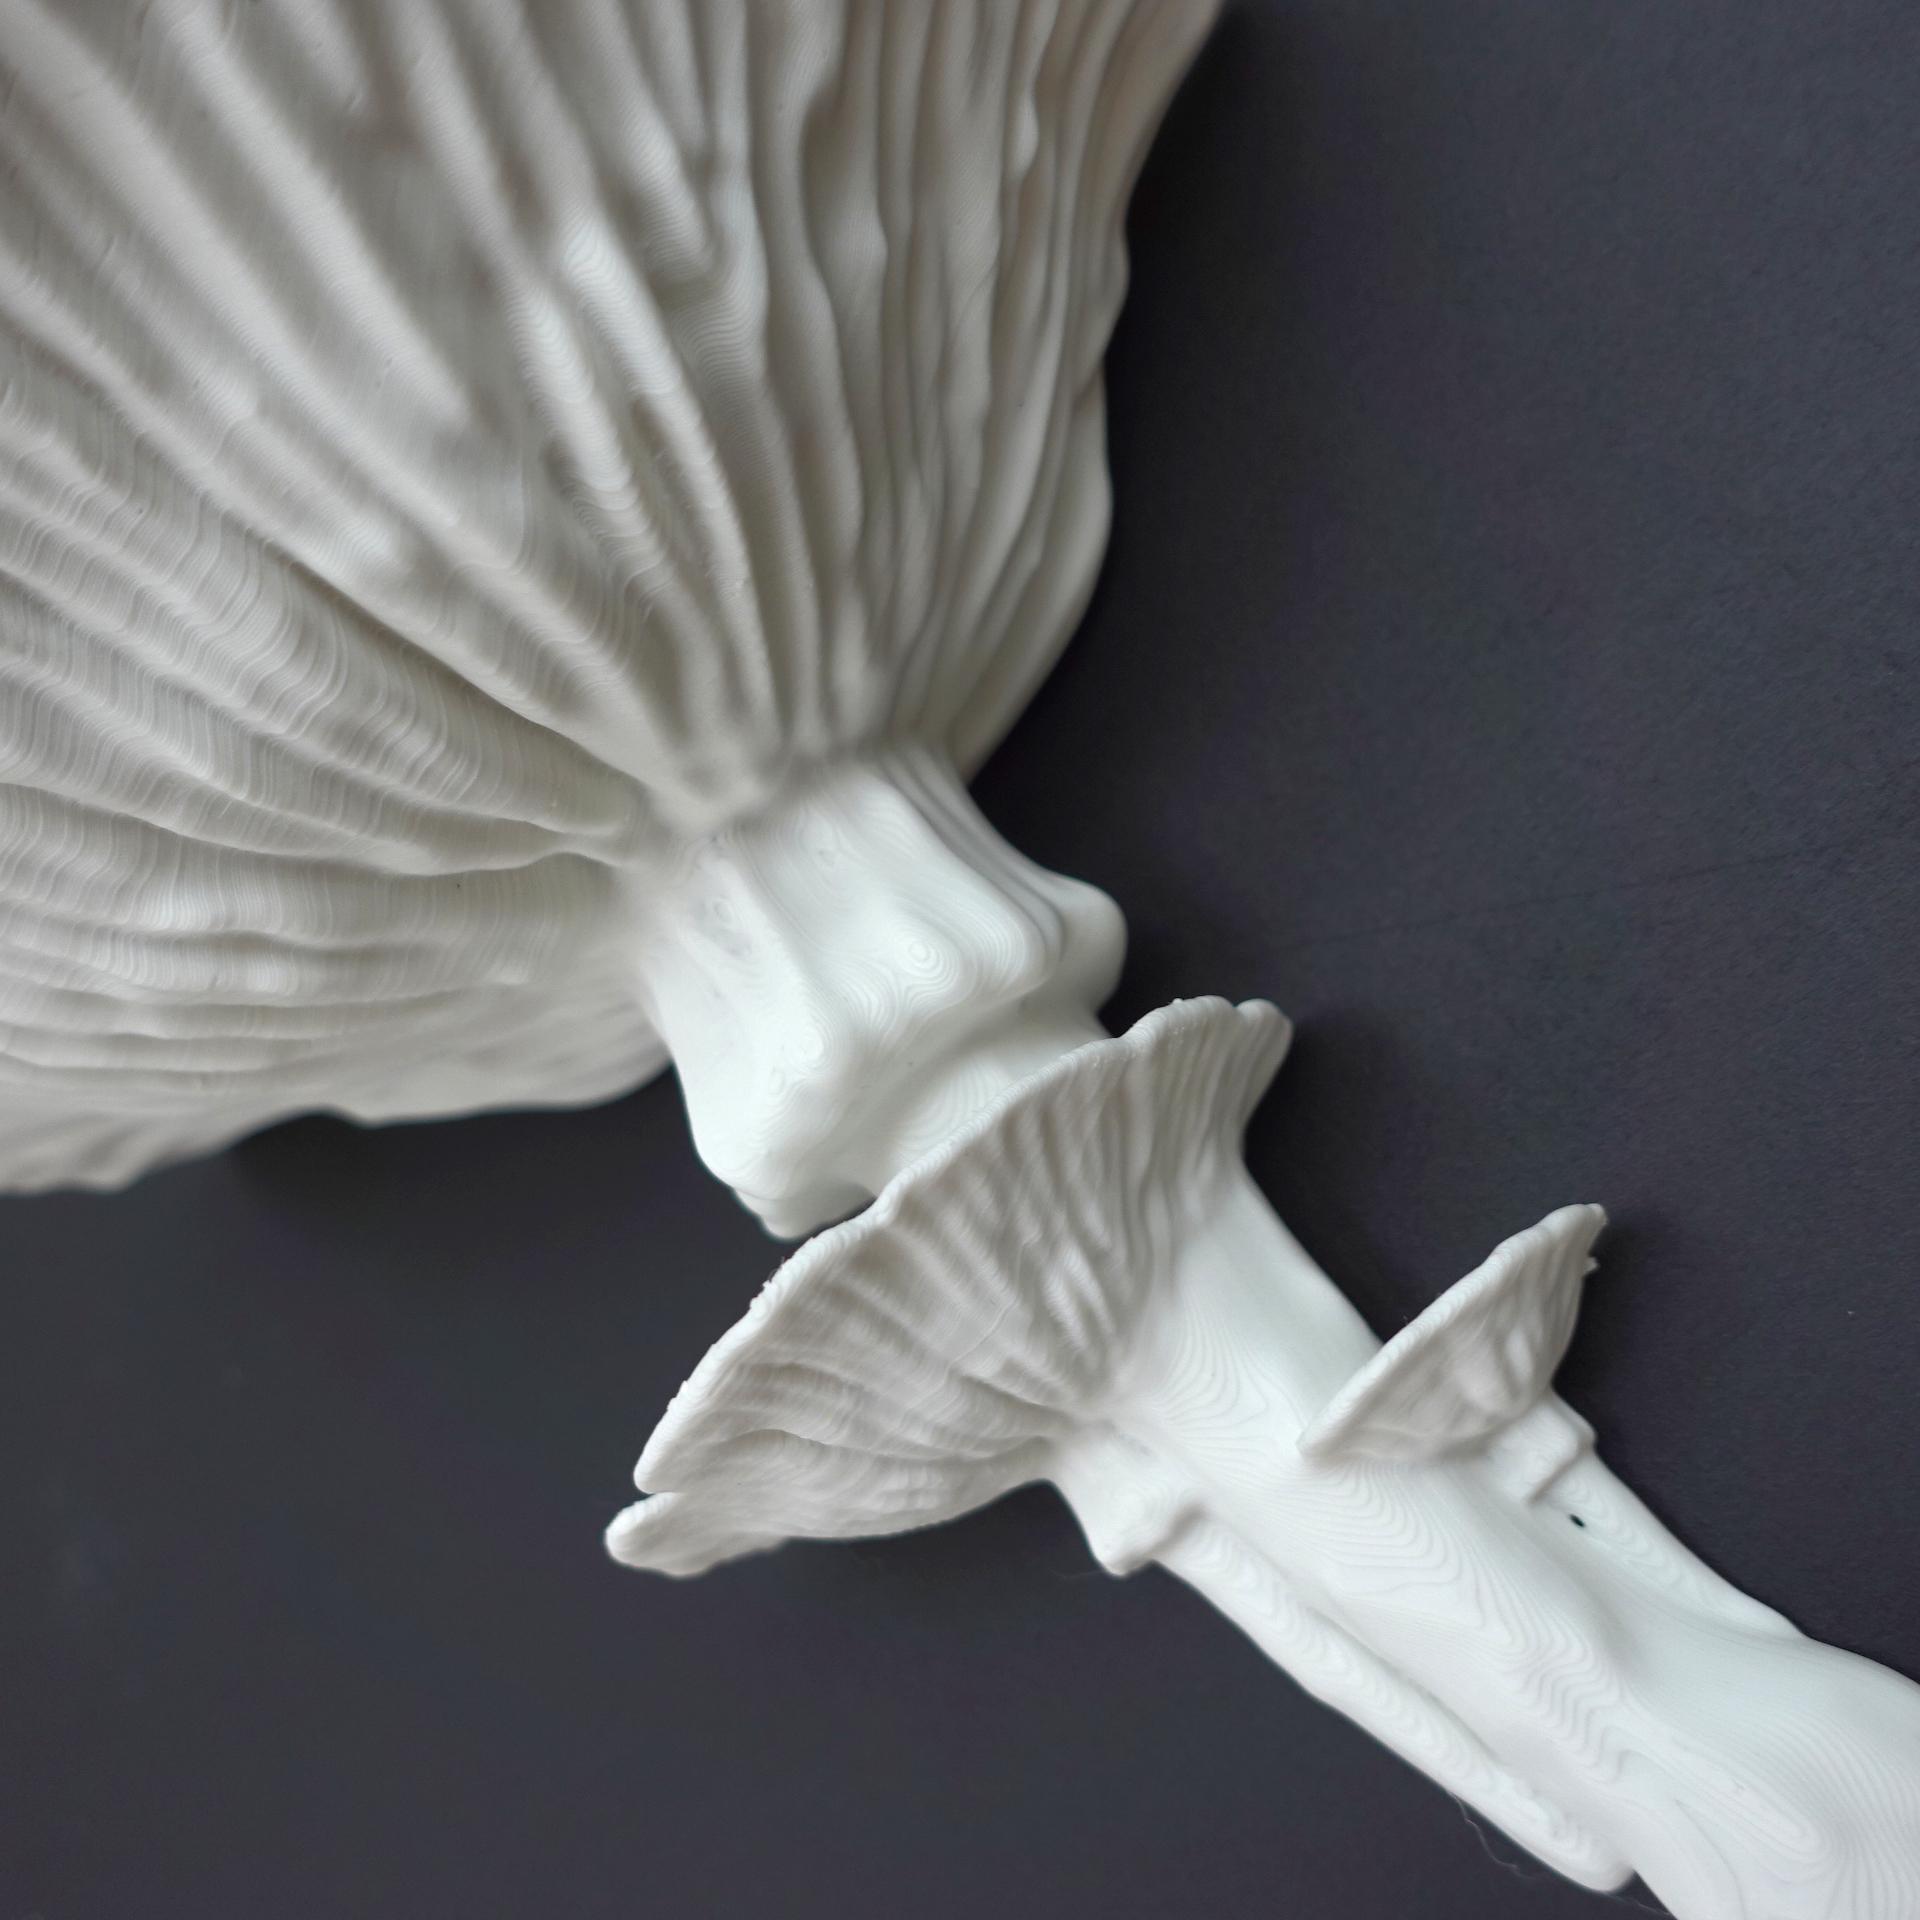 Mushroom shelf “Amanita Caesarea” 3d model